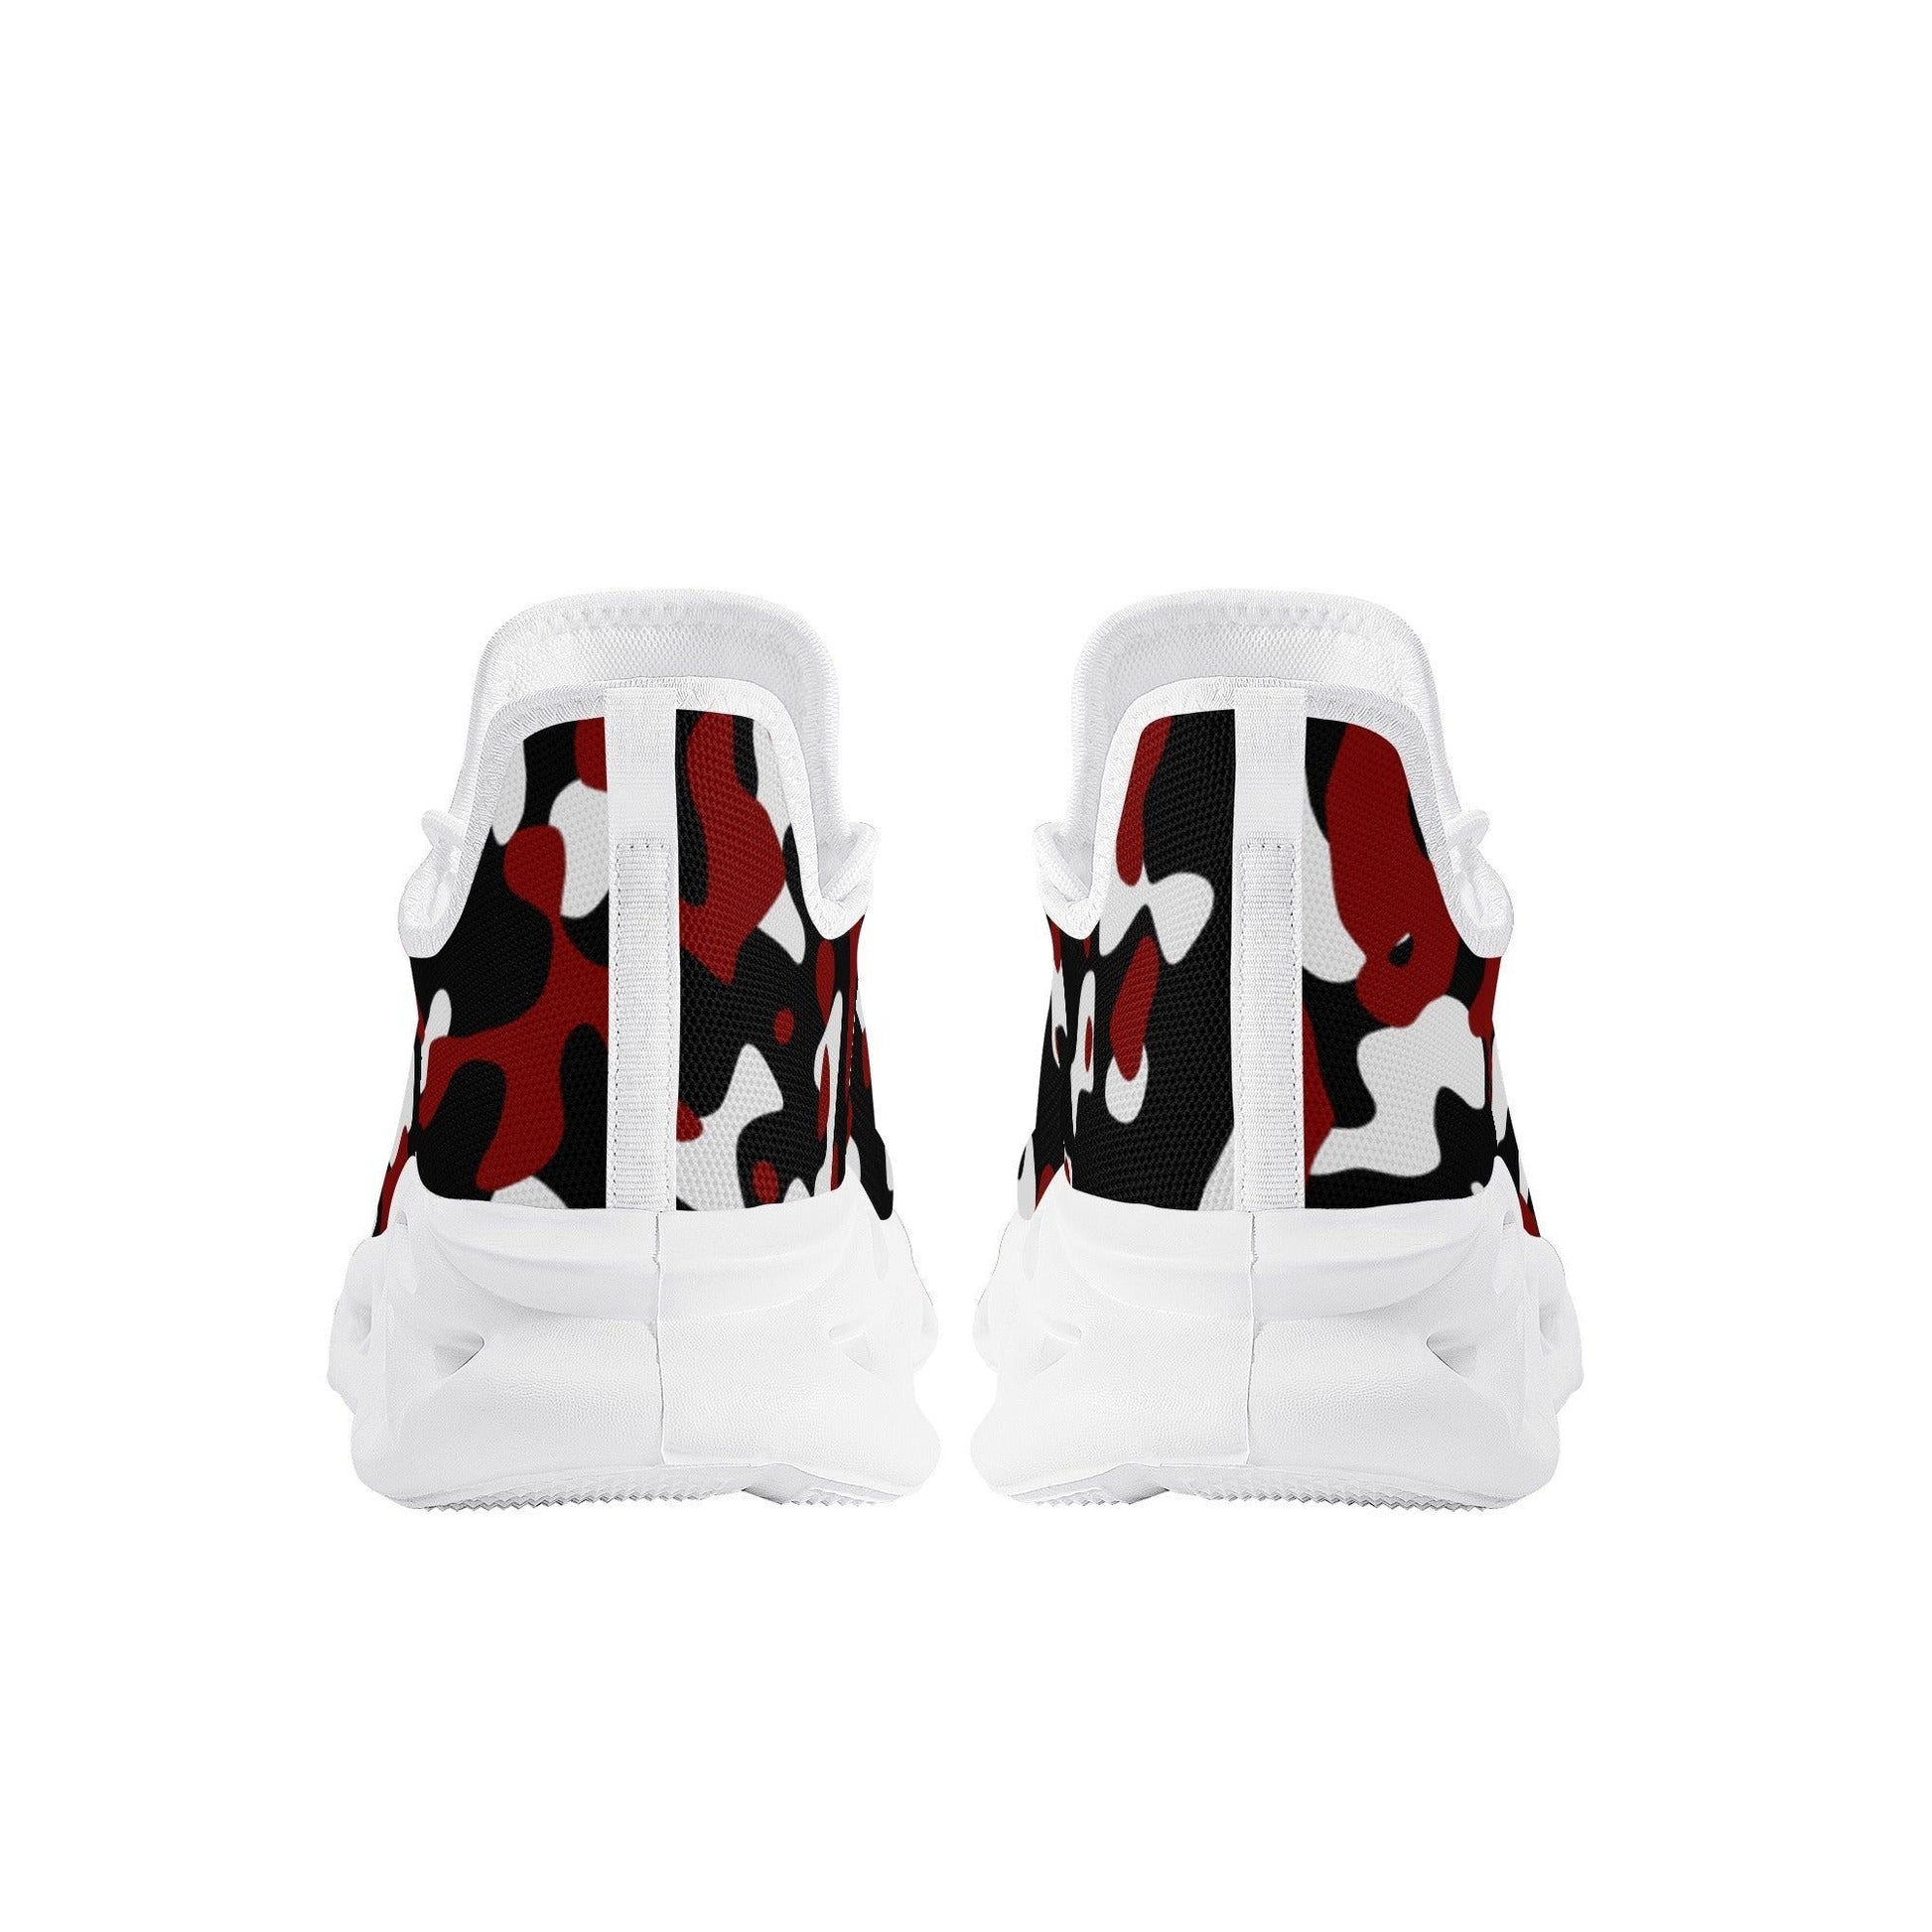 Schwarz Rot Weiß Camouflage Meeshy Flex Damen Sneaker -- Schwarz Rot Weiß Camouflage Meeshy Flex Damen Sneaker - undefined Sneaker | JLR Design